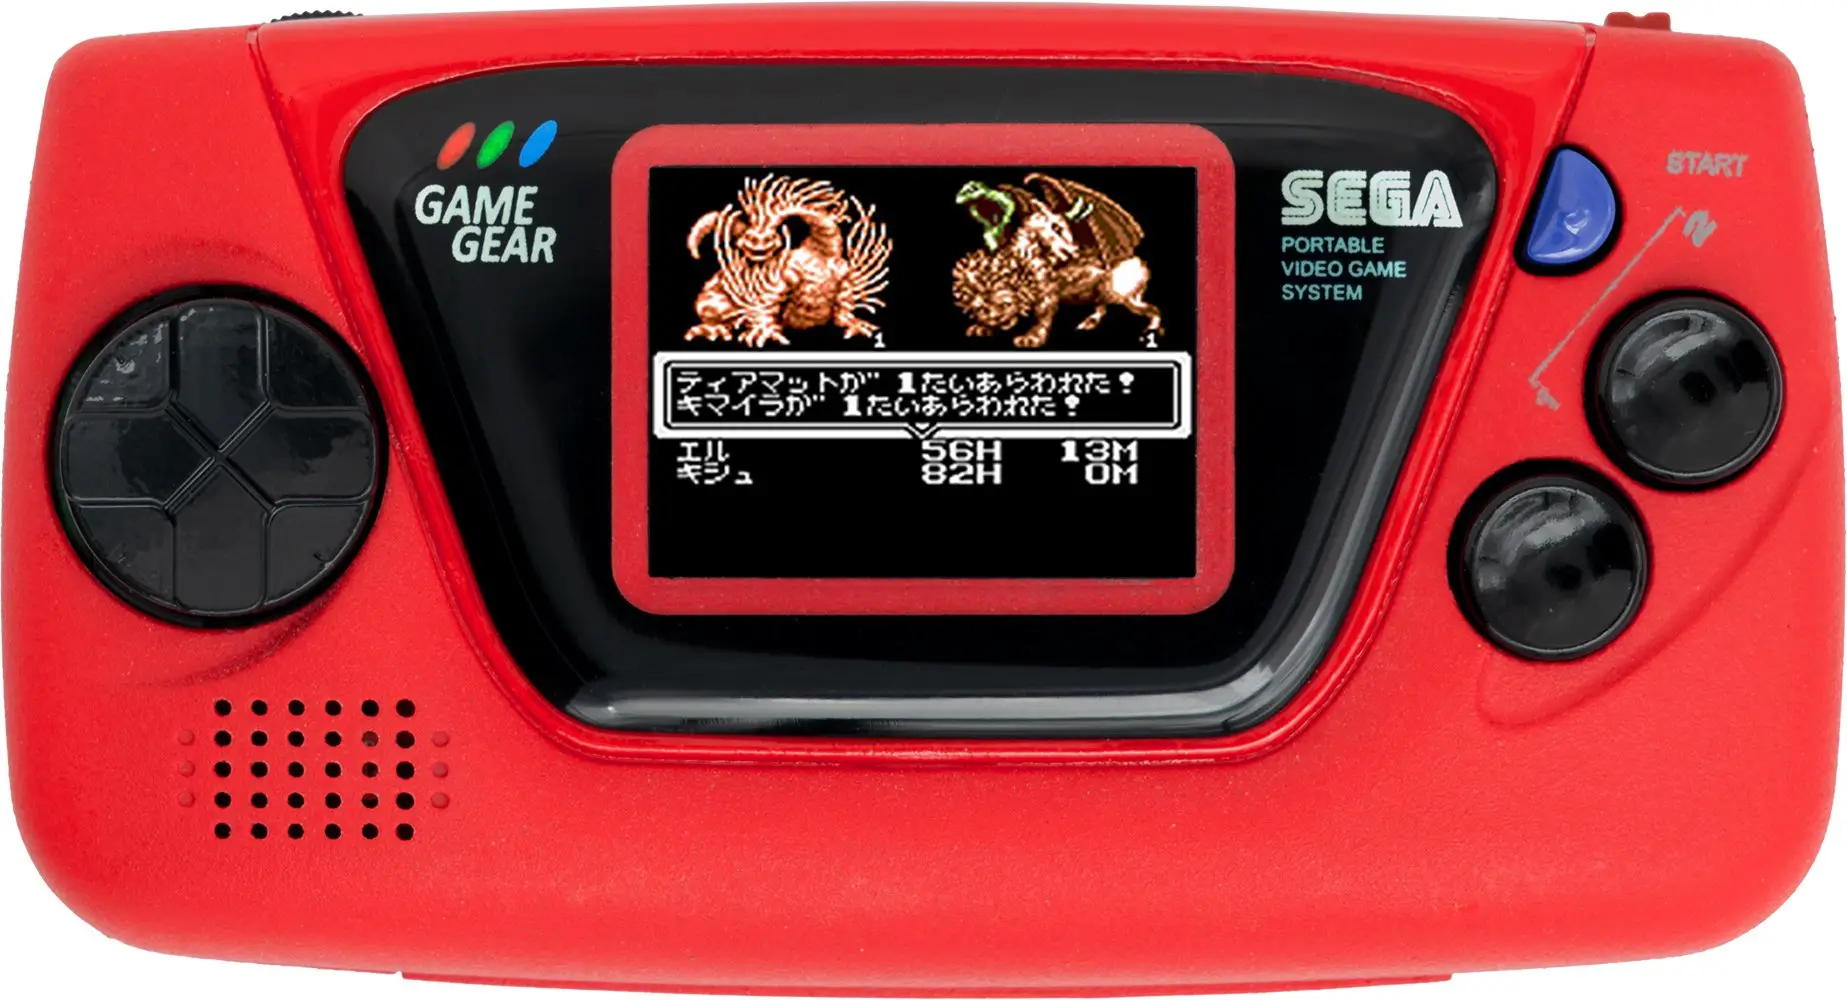 Consola Game Gear Micro, de color rojo, con un juego de rol en japonés en pantalla